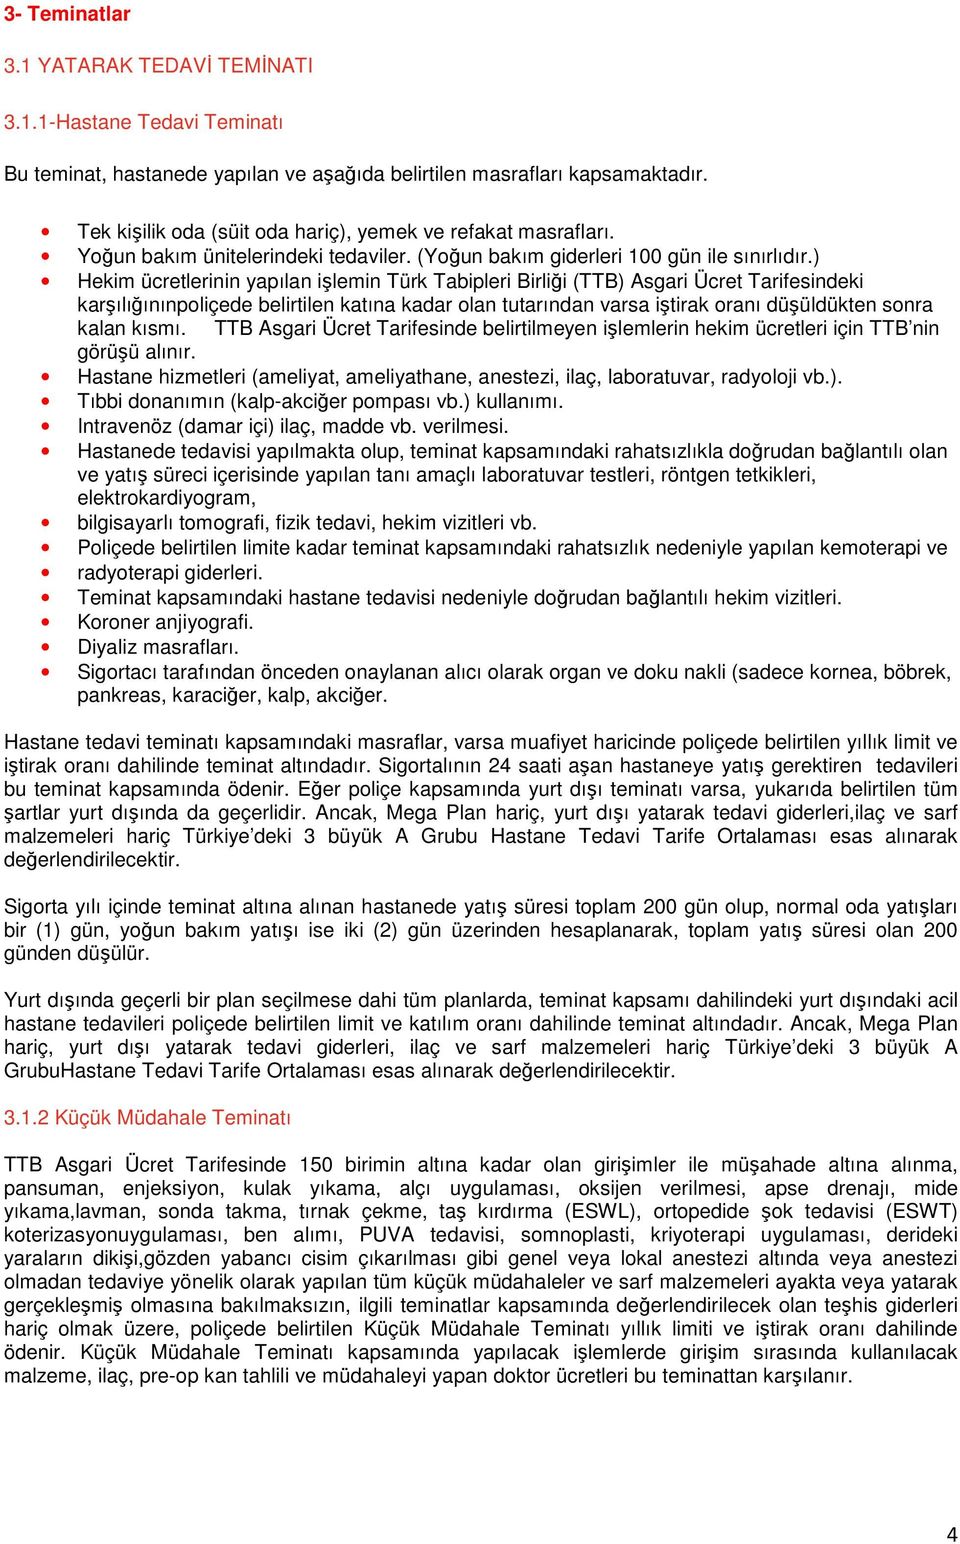 ) Hekim ücretlerinin yapılan işlemin Türk Tabipleri Birliği (TTB) Asgari Ücret Tarifesindeki karşılığınınpoliçede belirtilen katına kadar olan tutarından varsa iştirak oranı düşüldükten sonra kalan